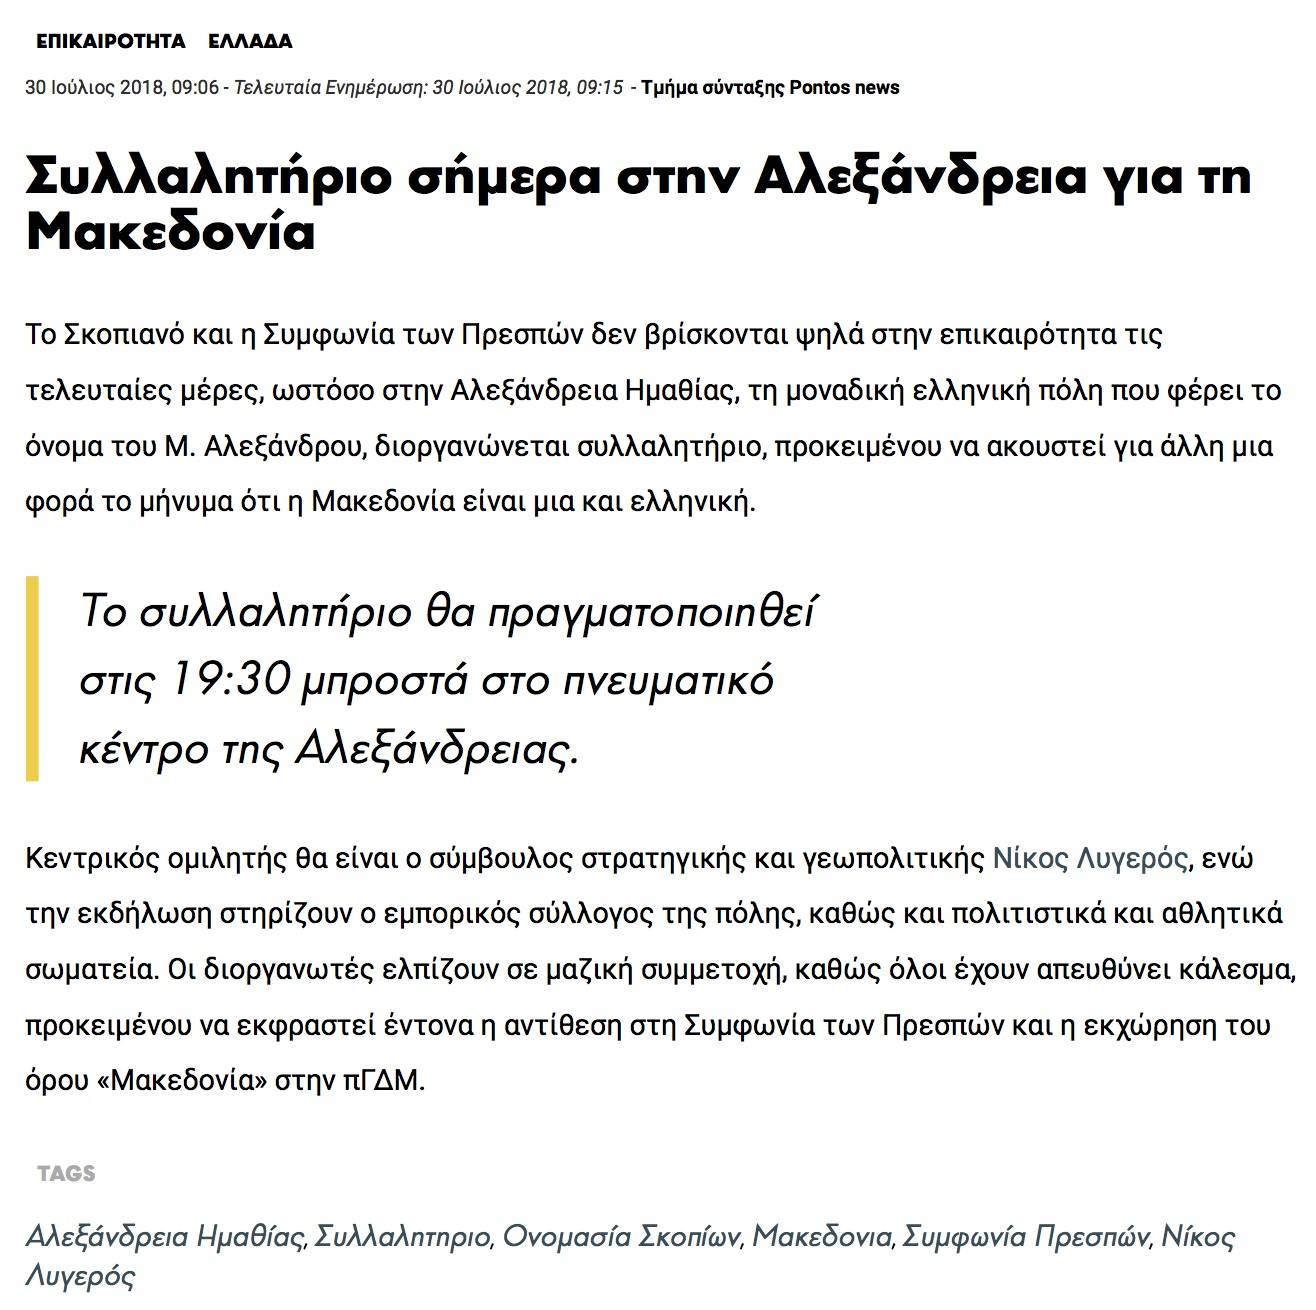 Συλλαλητήριο σήμερα στην Αλεξάνδρεια για τη Μακεδονία, pontosnews, 30/07/2018 - Publication